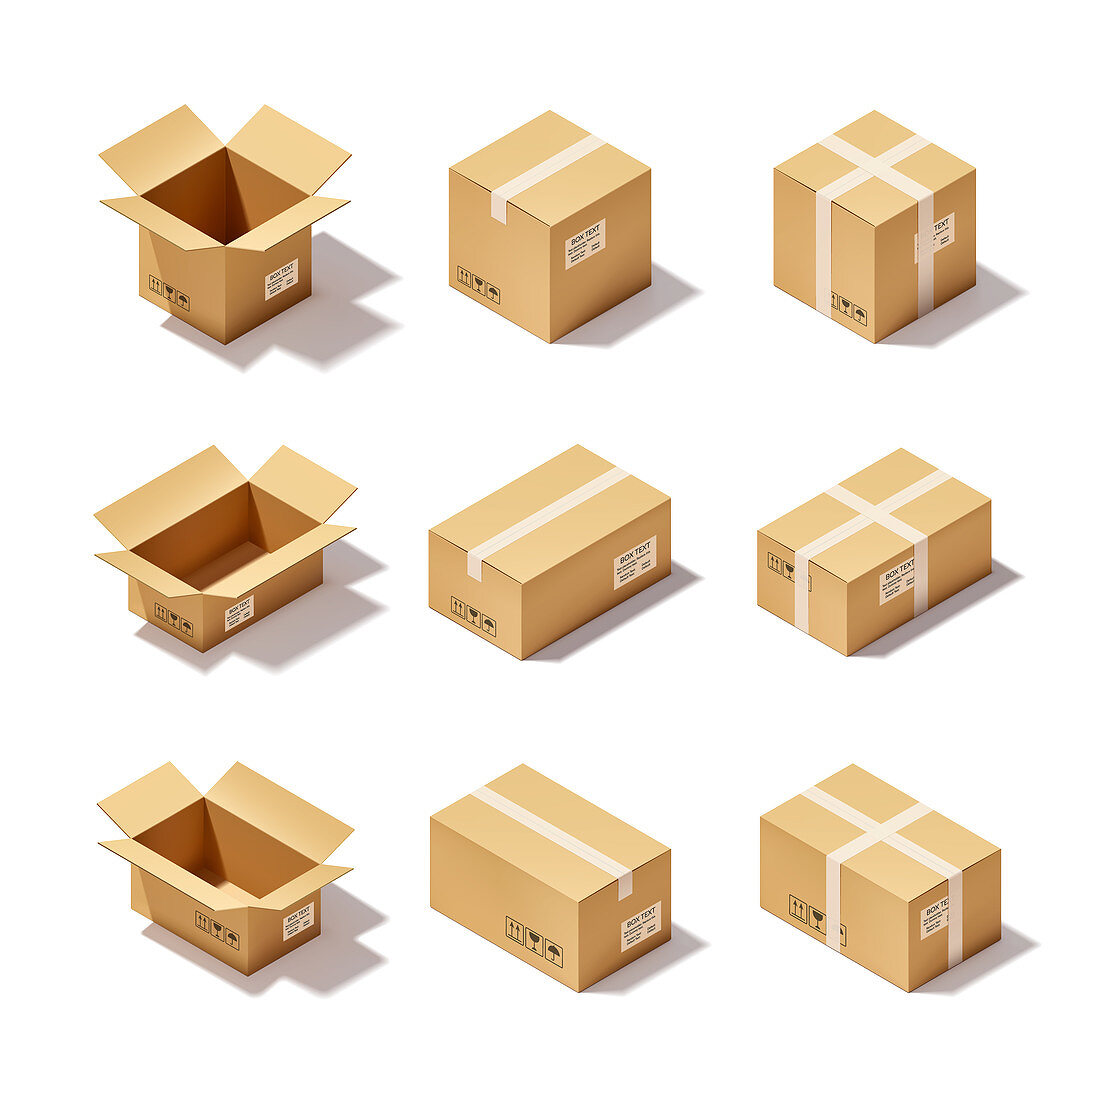 Box icons, illustration